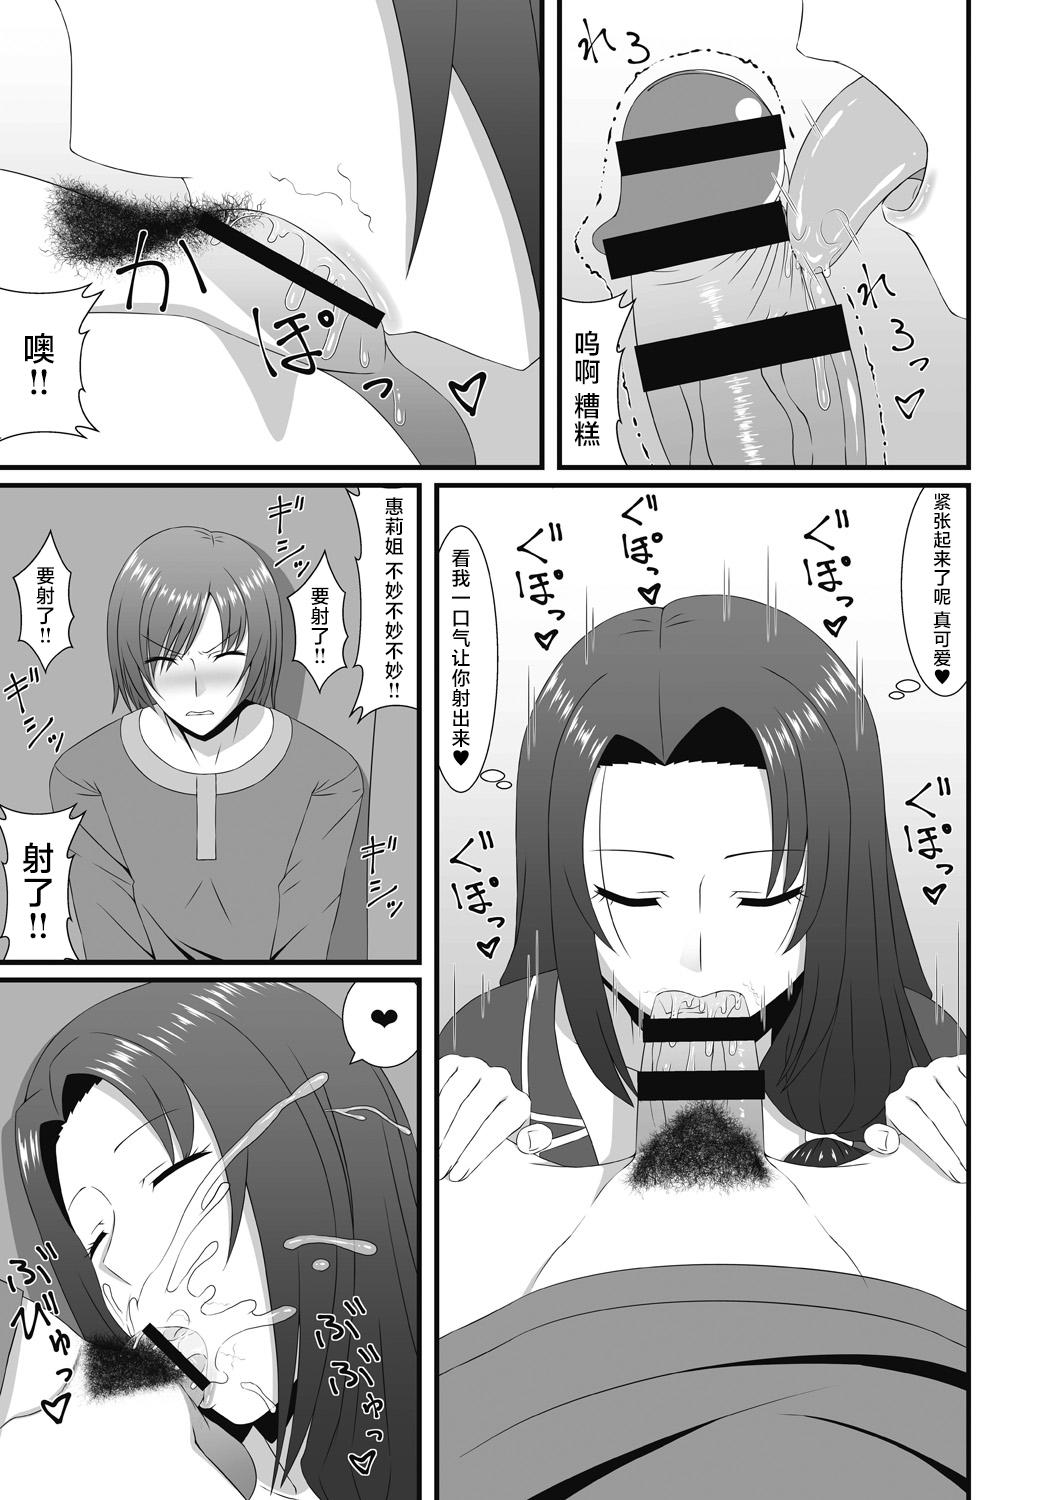 Mofos Mukashi Asonte Aketa Ko ga Ikemen ni Natteita node... - Original Rabuda - Page 7